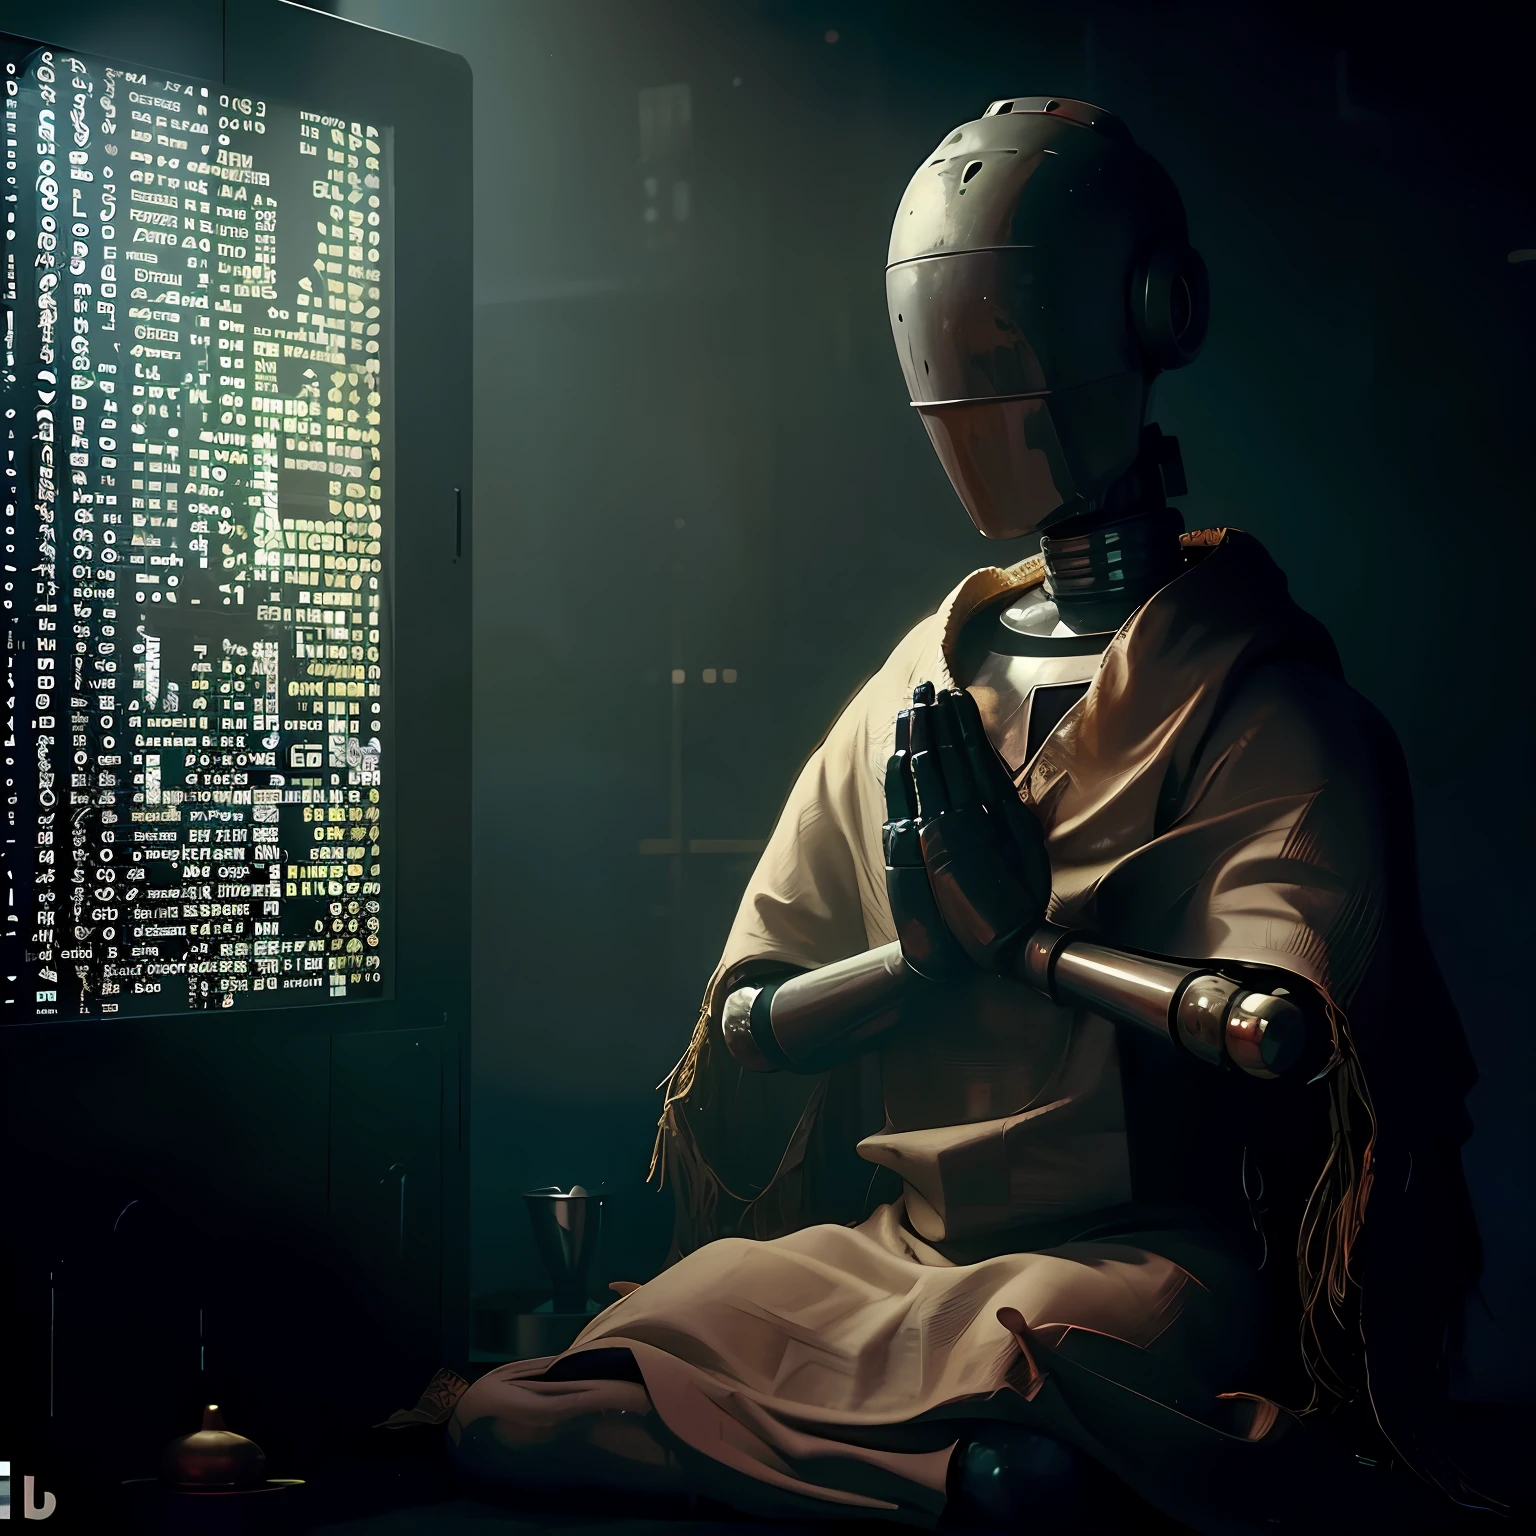 有一个机器人坐在电脑屏幕前, 机器人宗教, 赛博朋克禅宗冥想, 一个正在冥想的机器人, 人工智能之神, 正统赛博朋克, 人工智能之神s, 宗教科学, 赛博朋克耶稣基督, 机器人教皇, 加密元宇宙, 即将到来的人工智能奇点, 邪恶的人工智能, ( ( 位翻转 | AI艺术之神 ) )